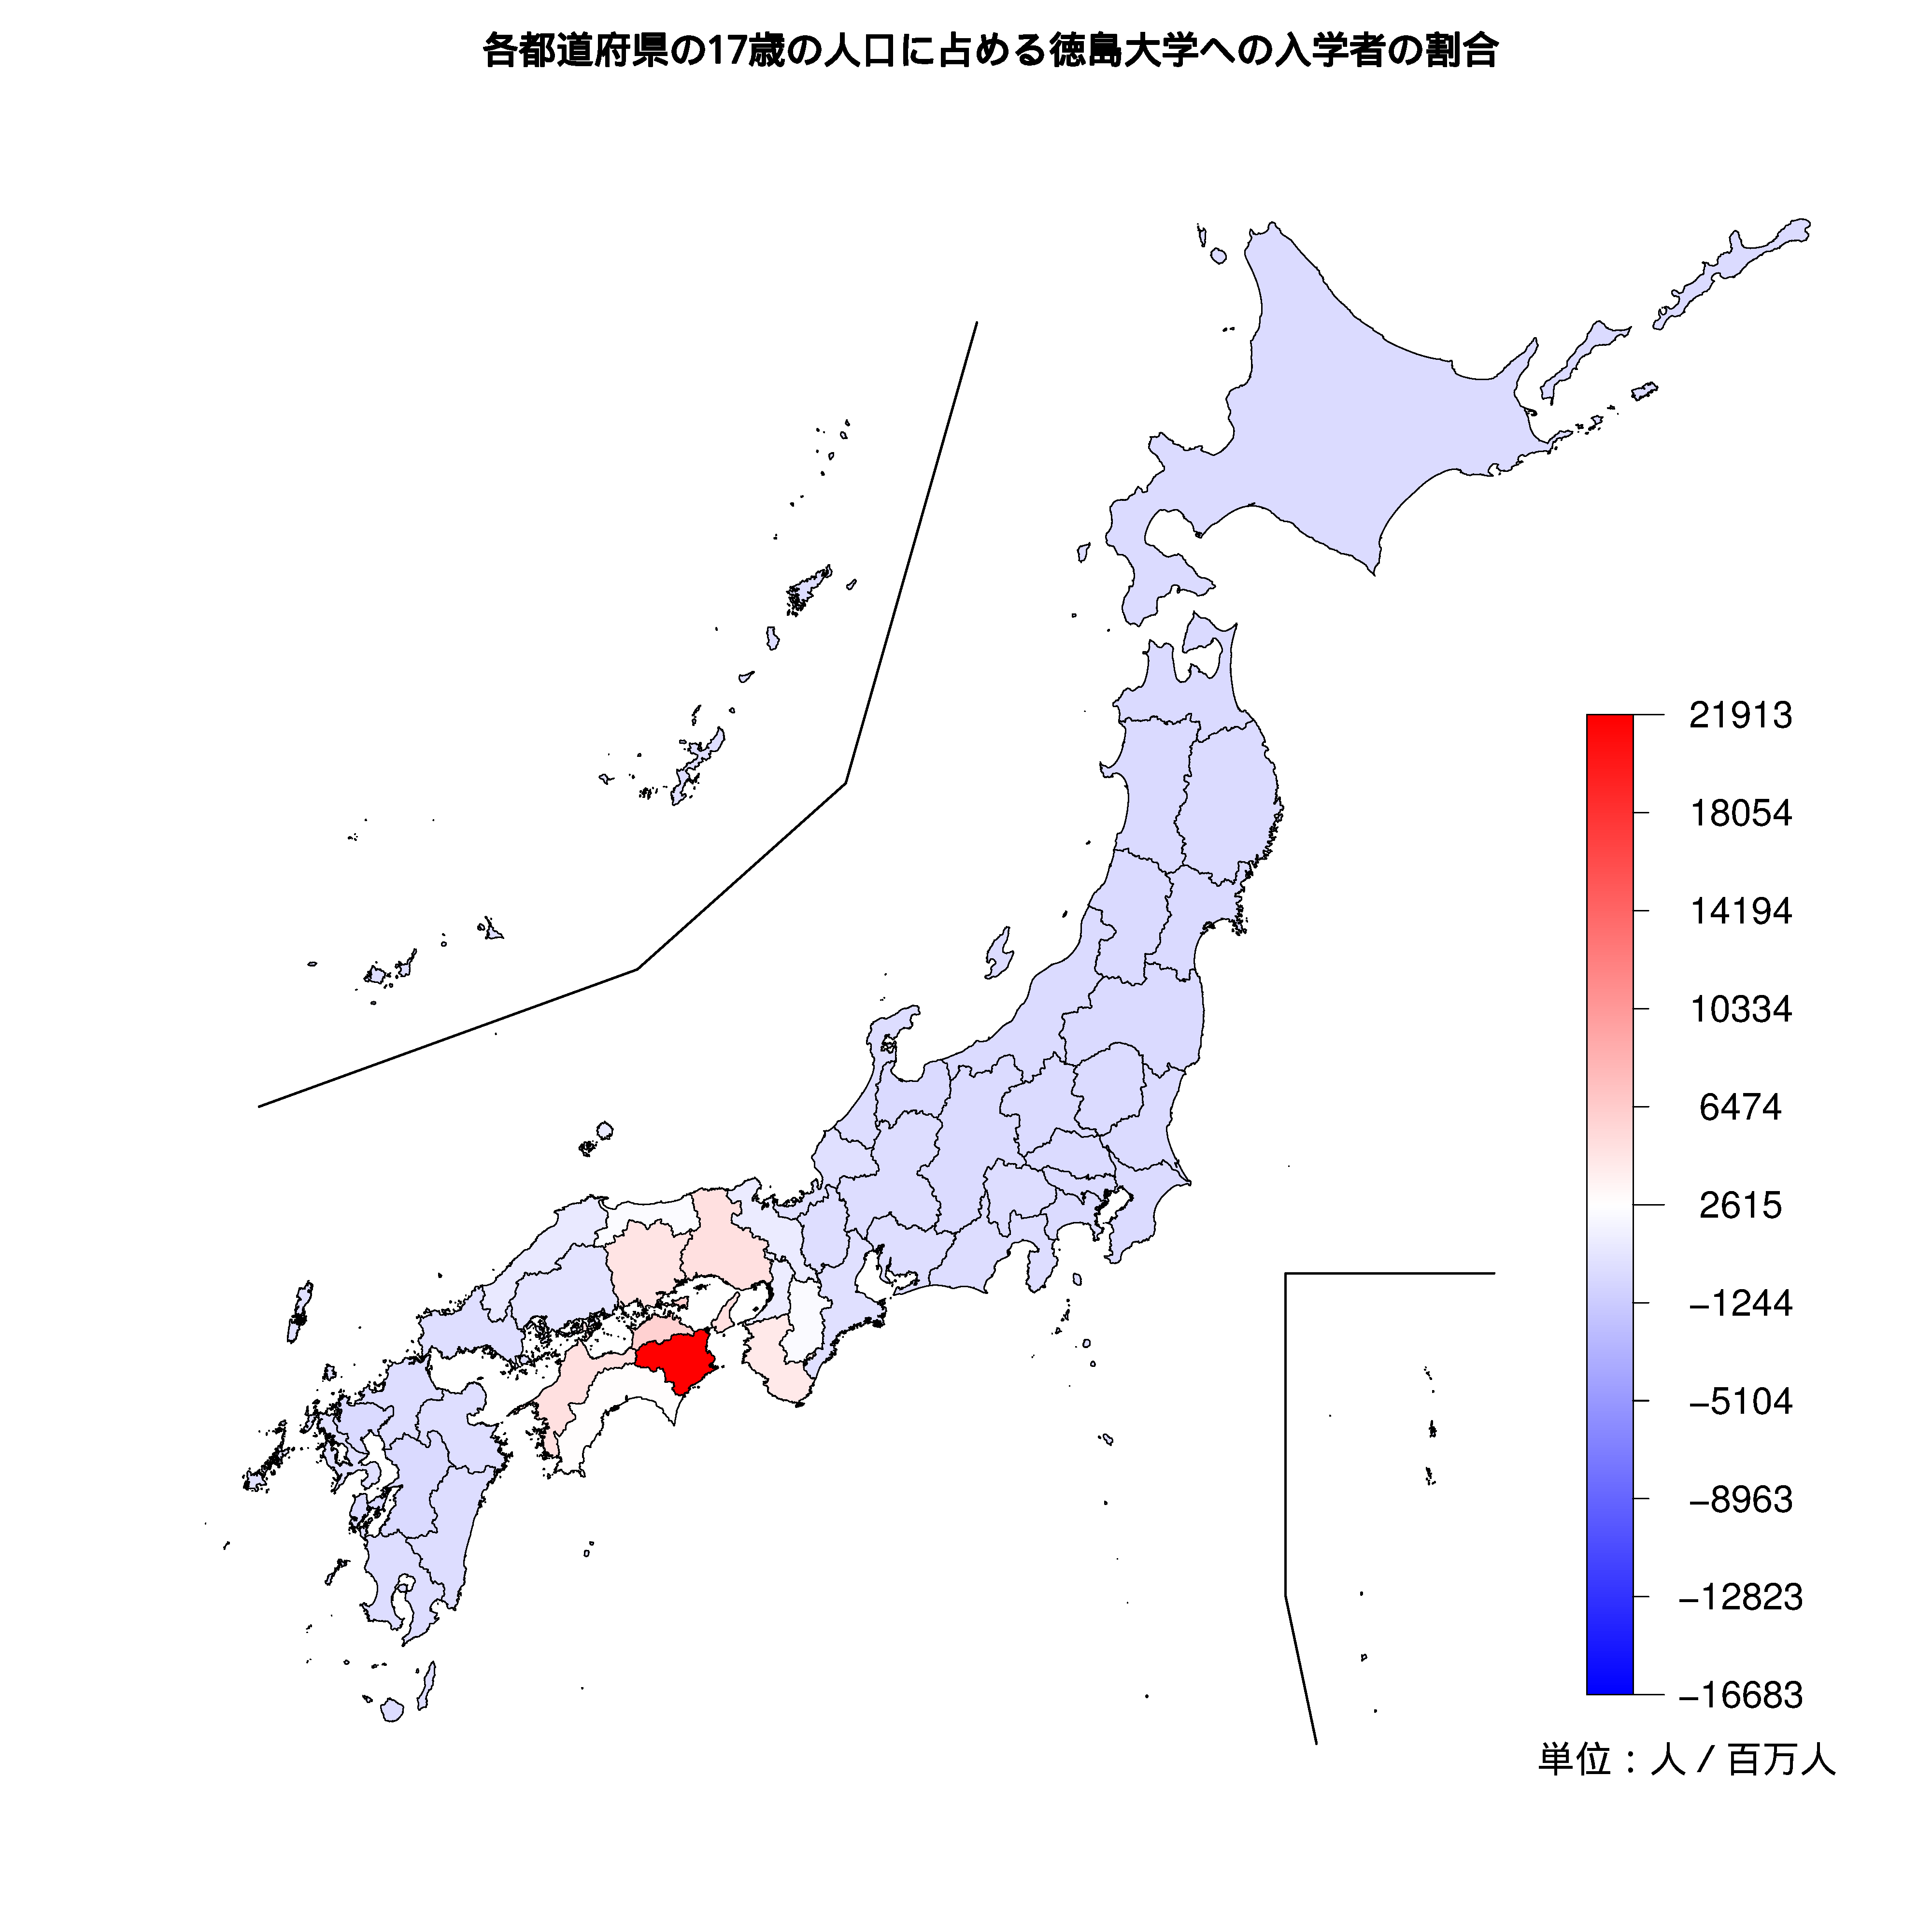 徳島大学への入学者が多い都道府県の色分け地図